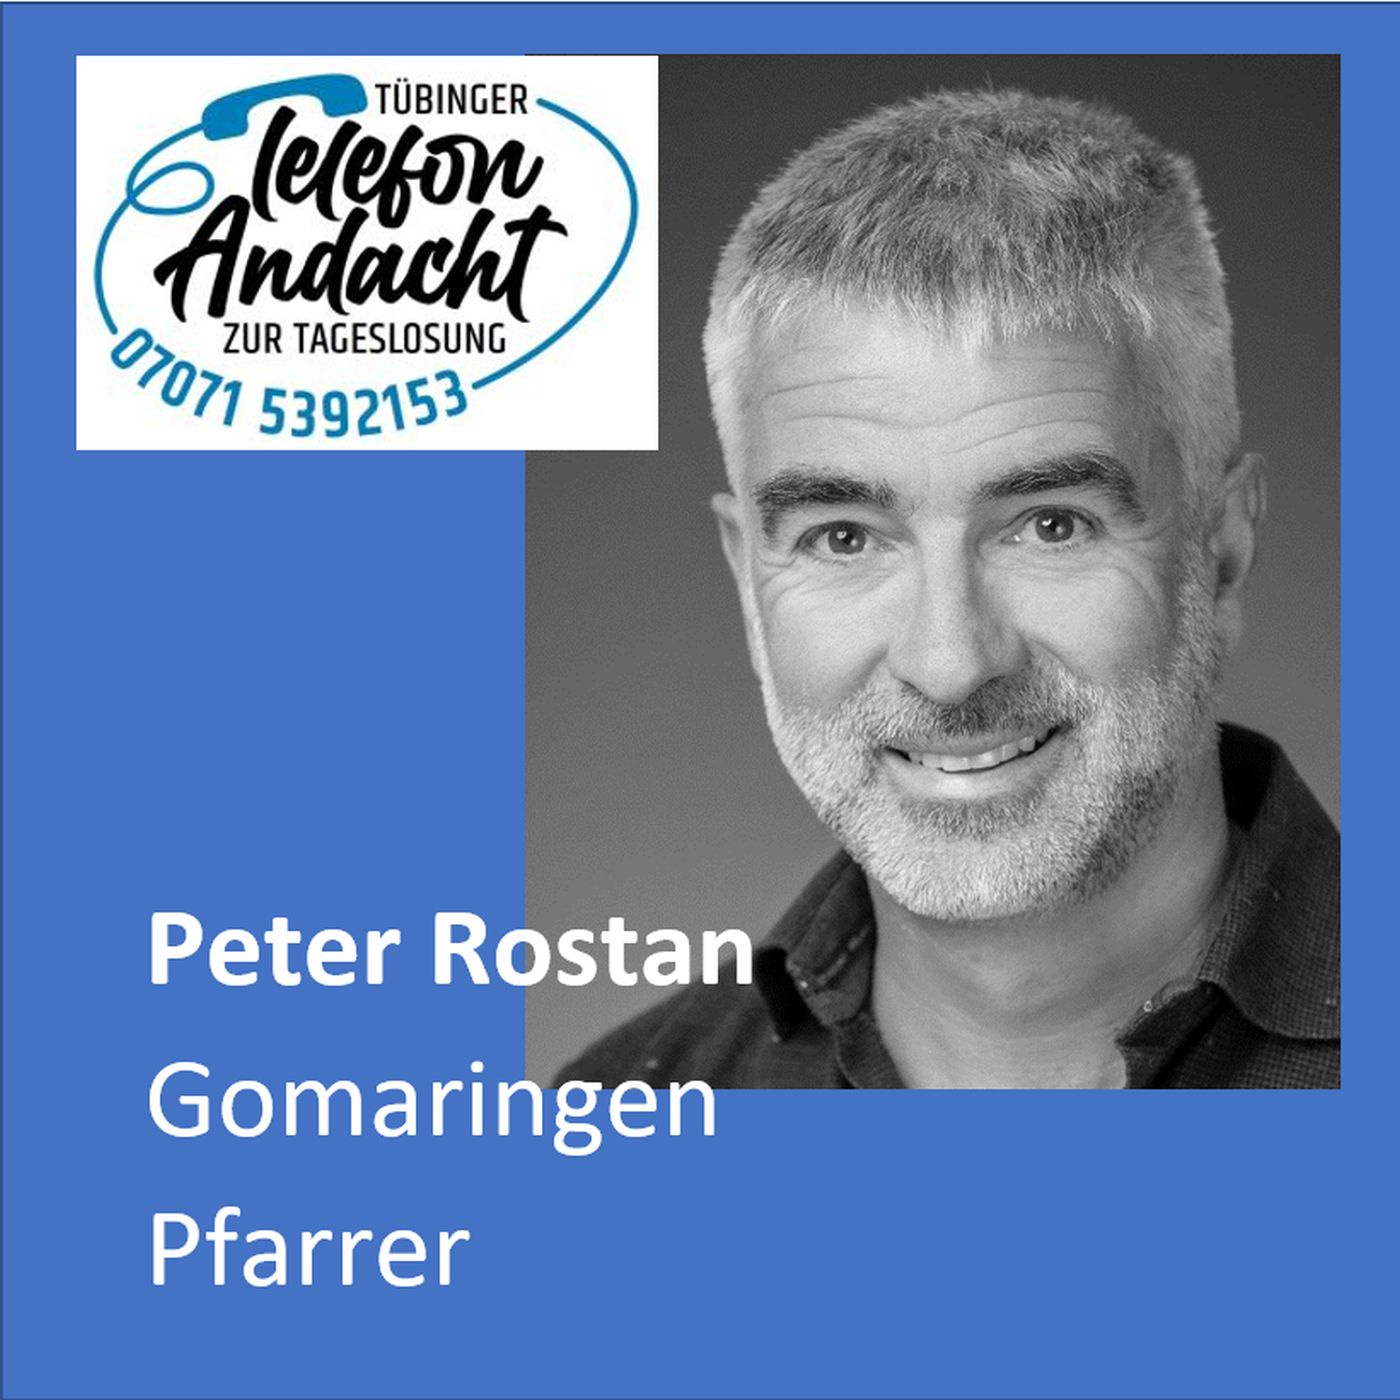 24 07 27 Peter Rostan